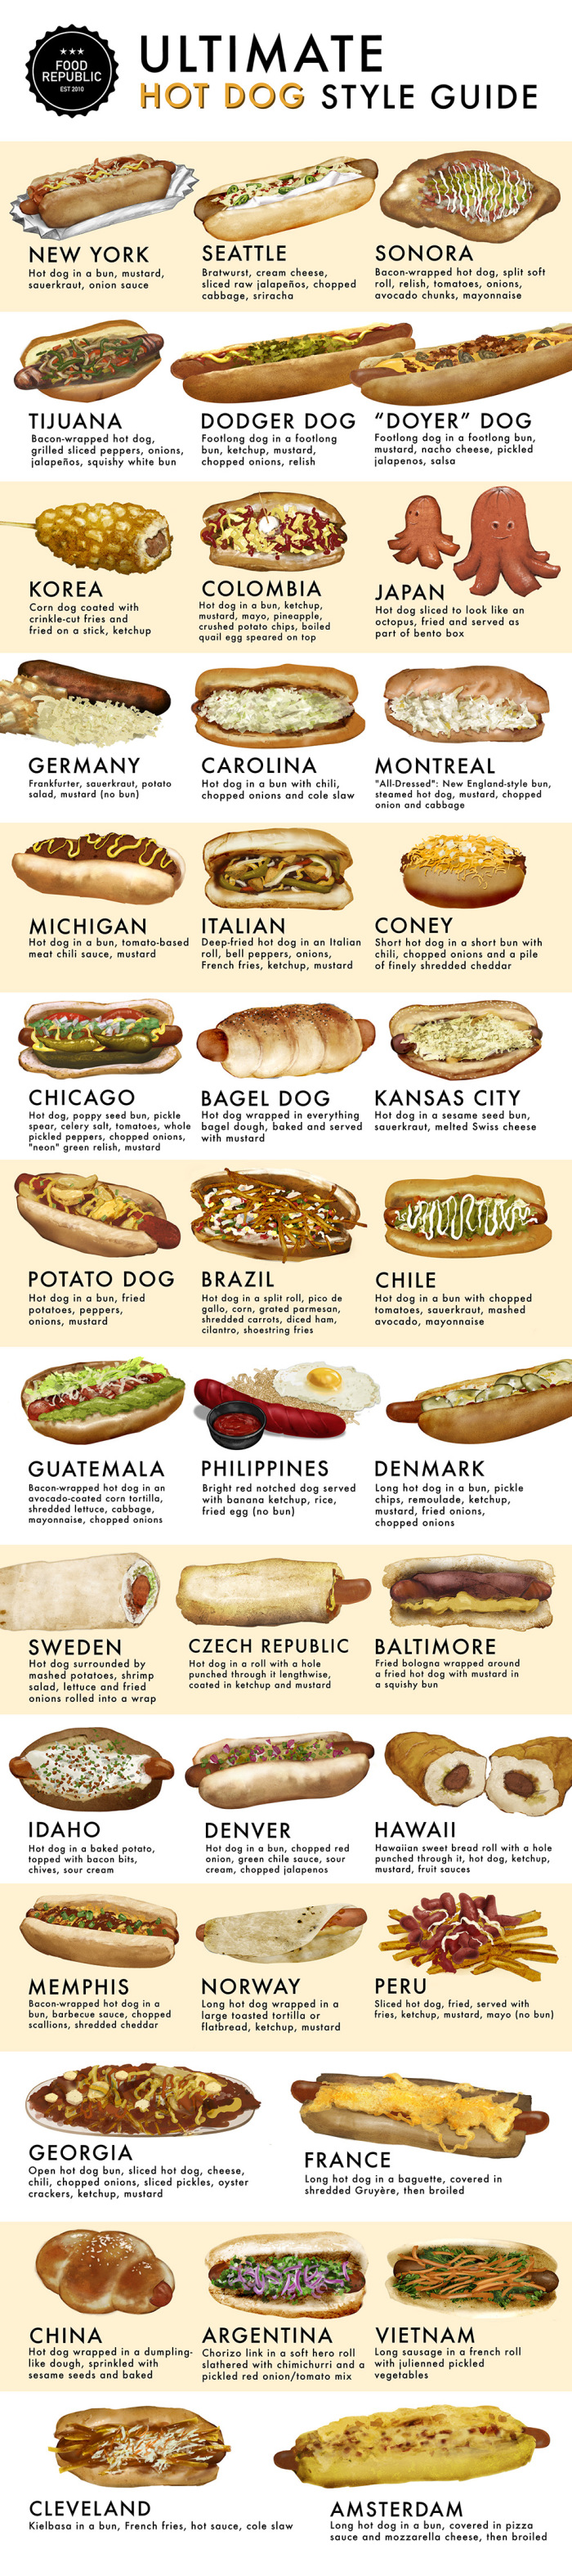 Brazilian Hot Dog (Cachorro Quente Brasileiro) 